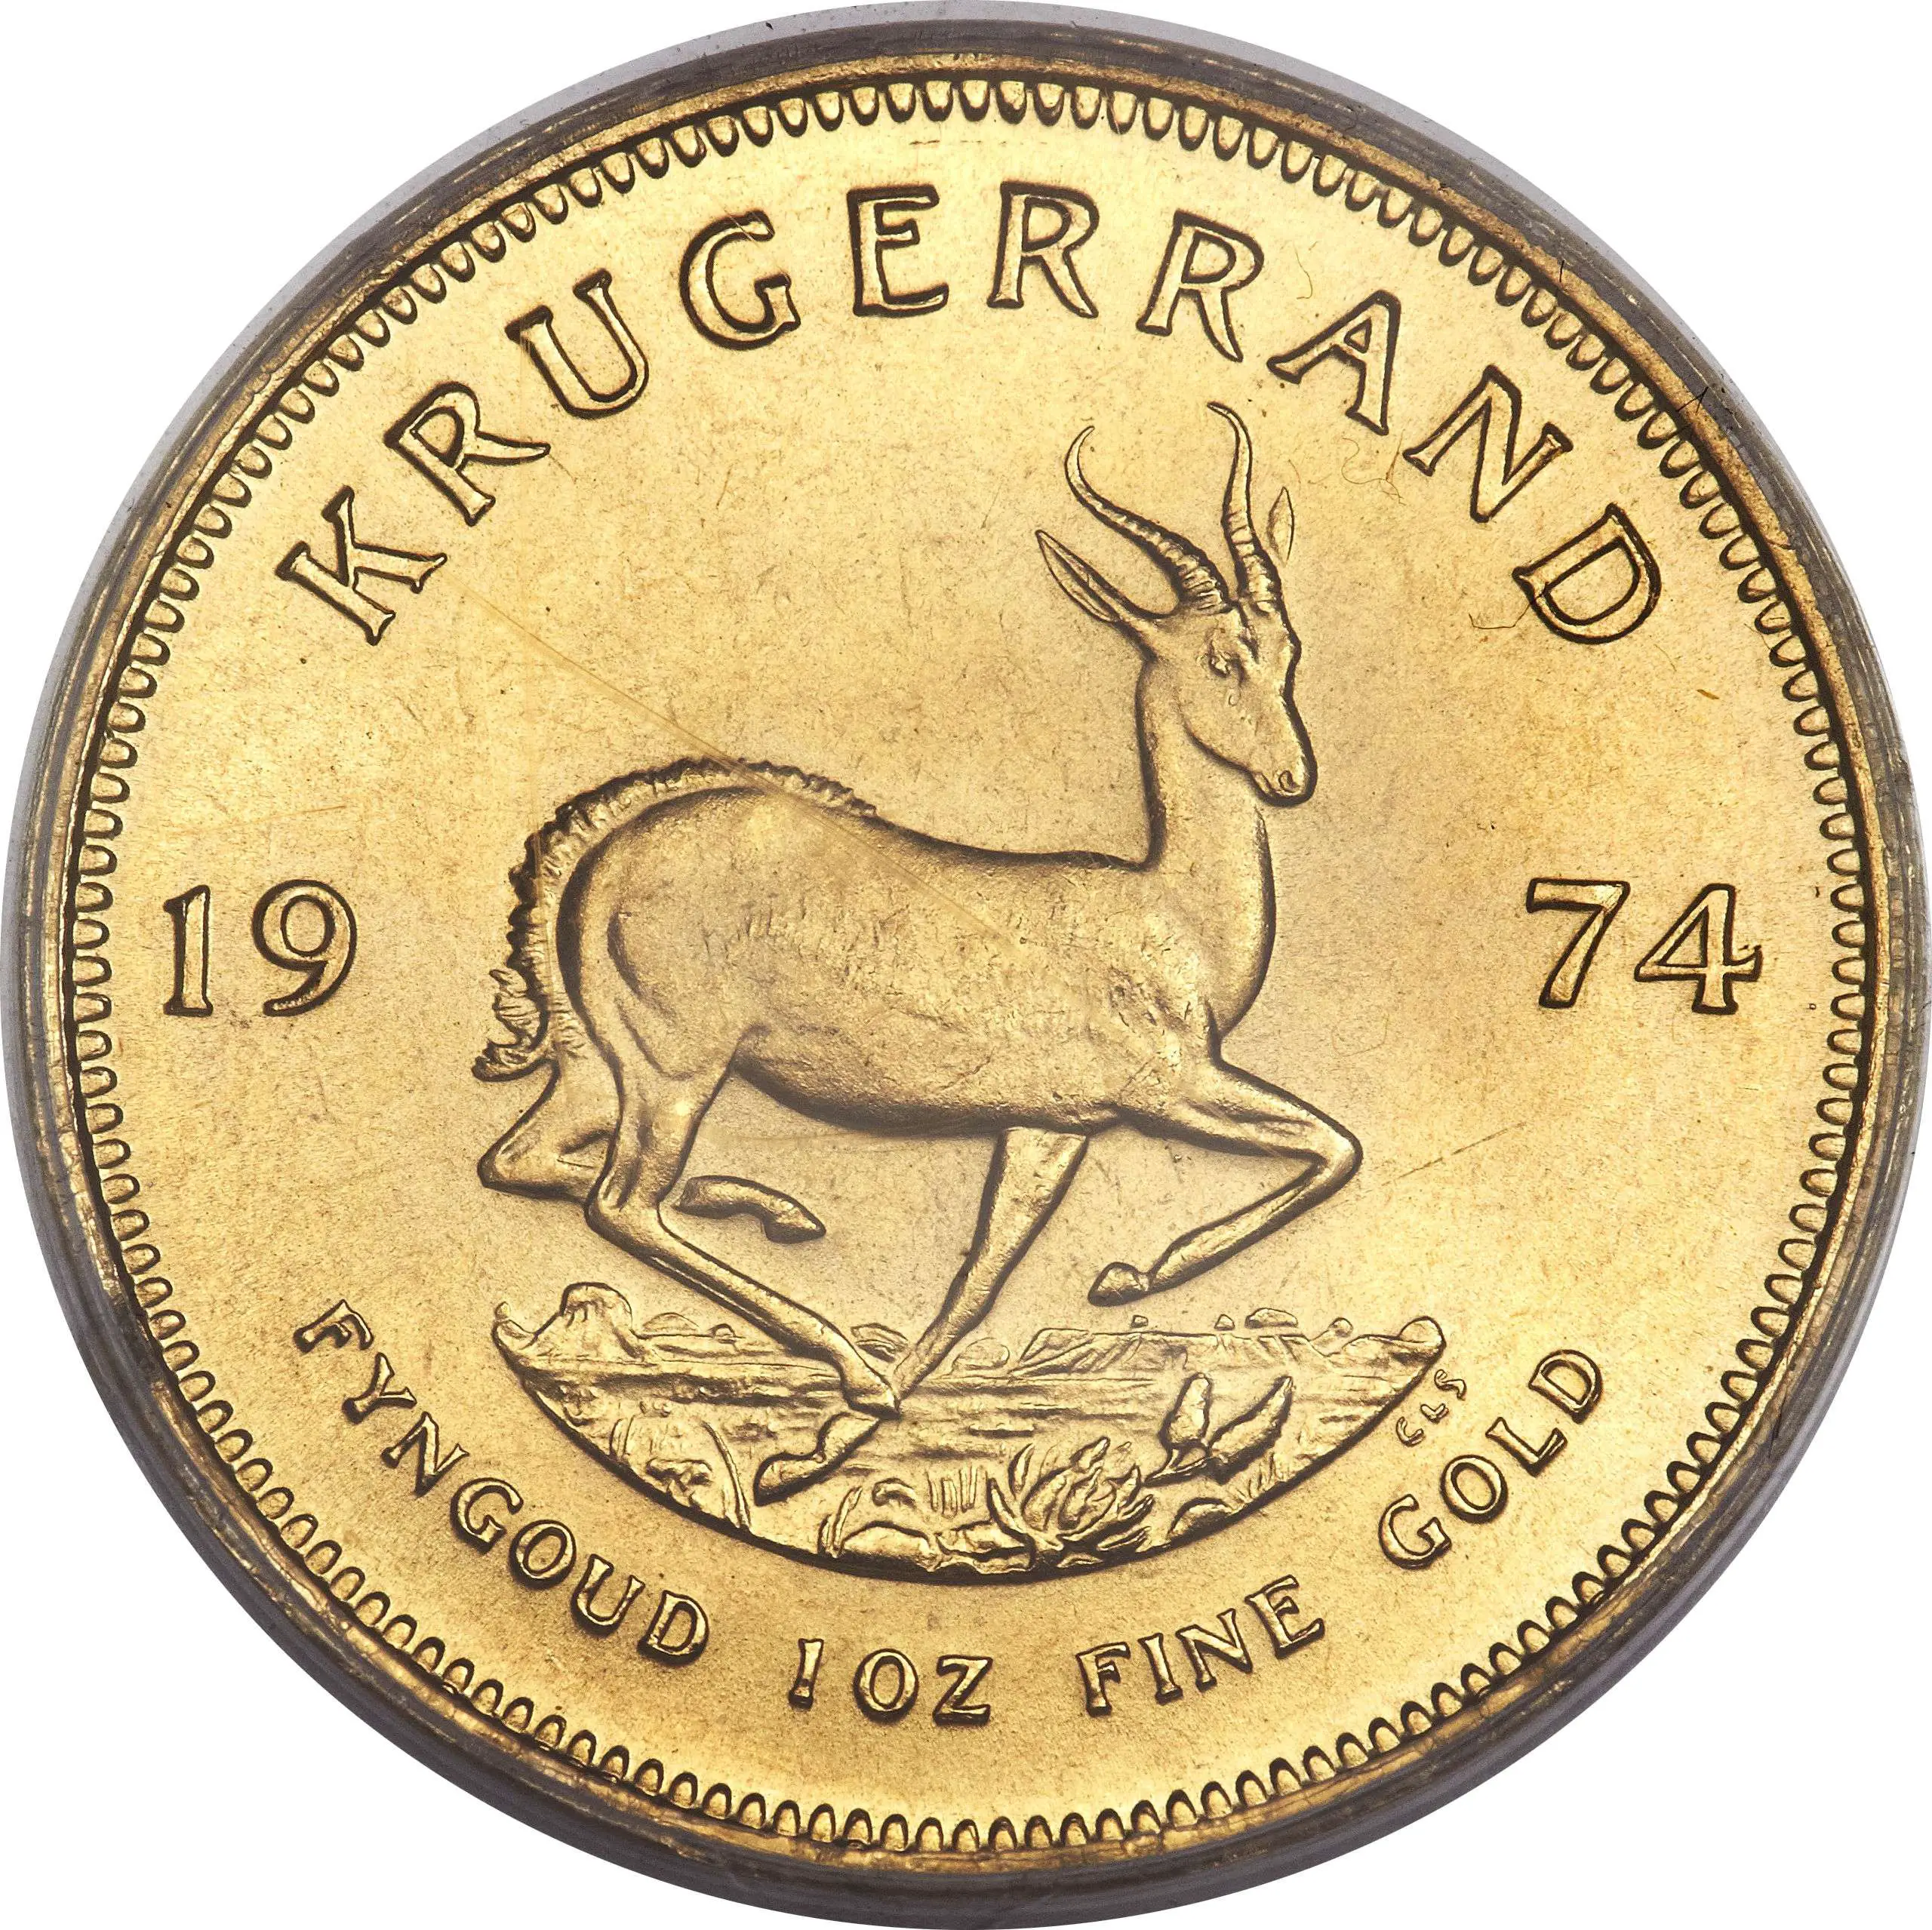 1976 Krugerrand Value October 2020